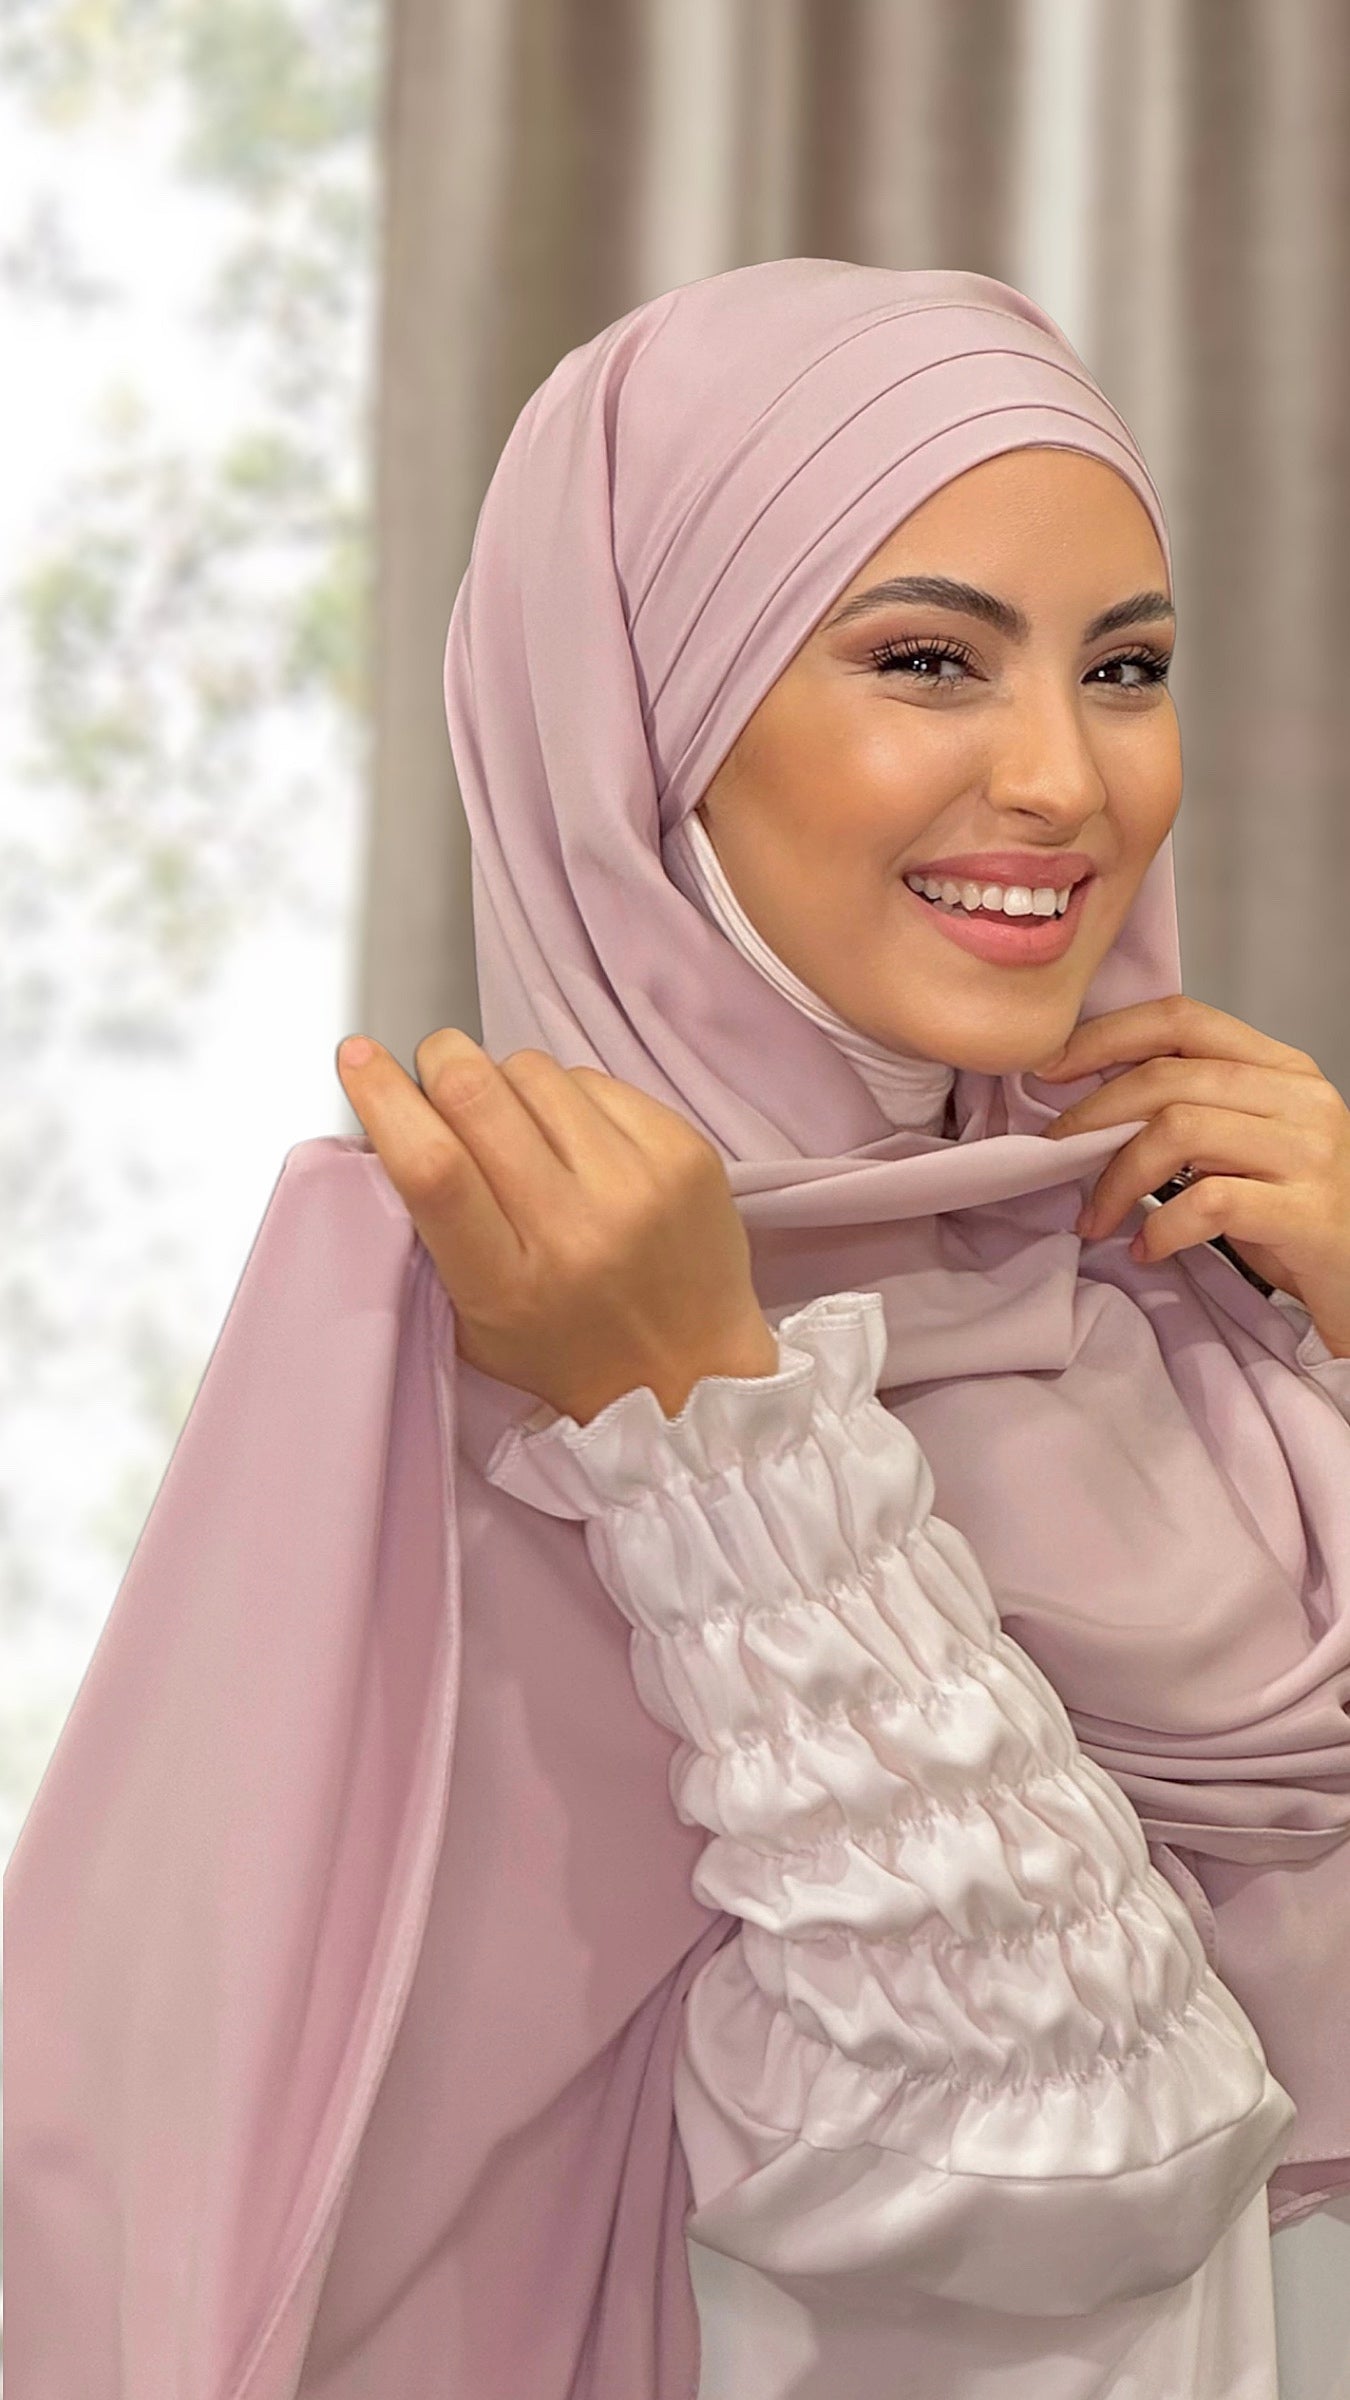 Sale Plum Purple Chiffon Layered Glam Abaya